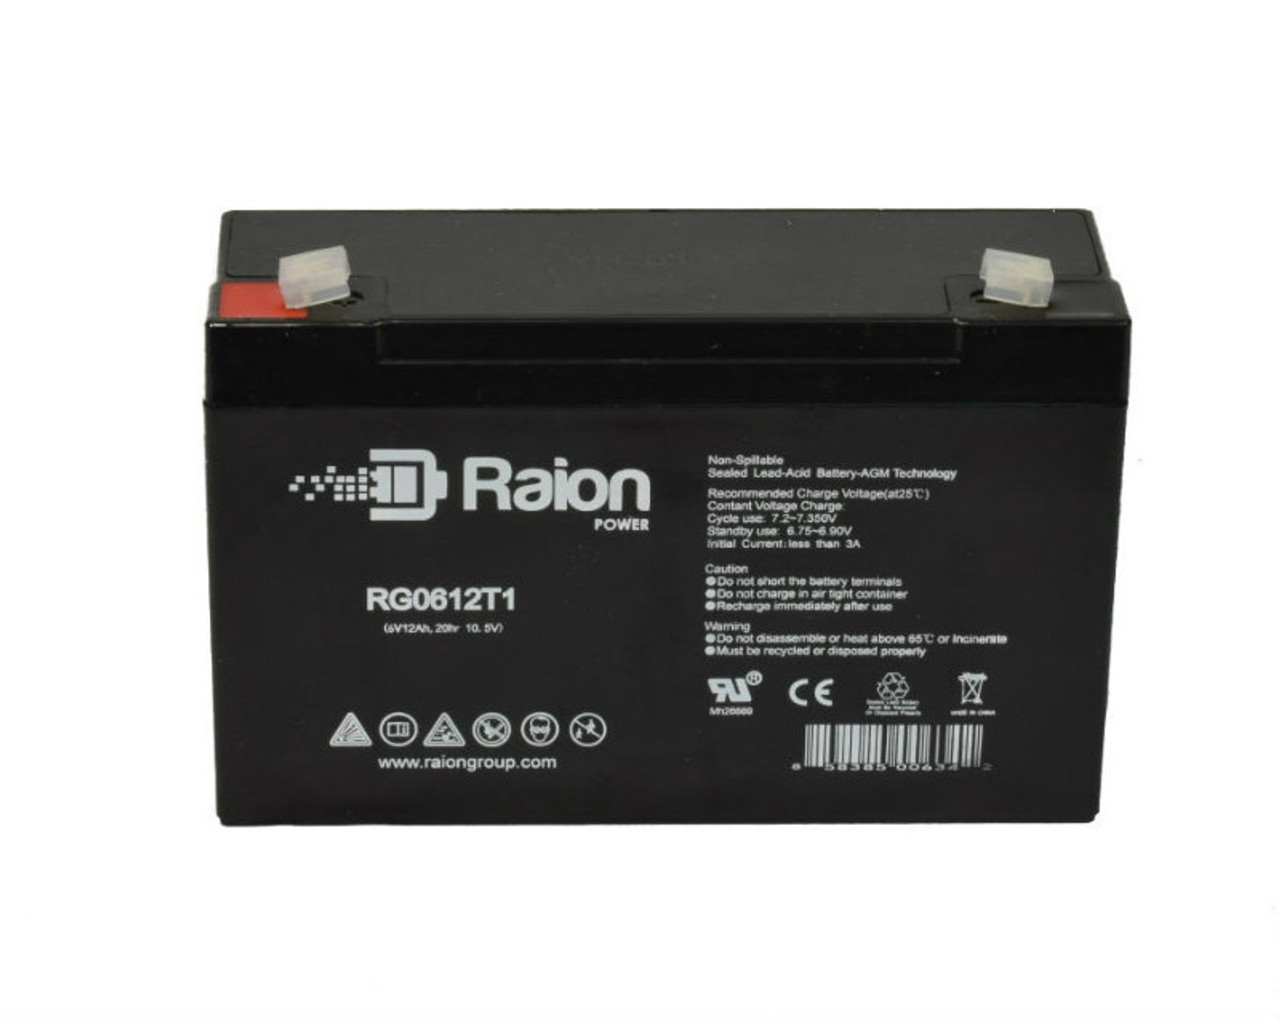 Raion Power RG06120T1 SLA Battery for Emergi-Lite 12M9